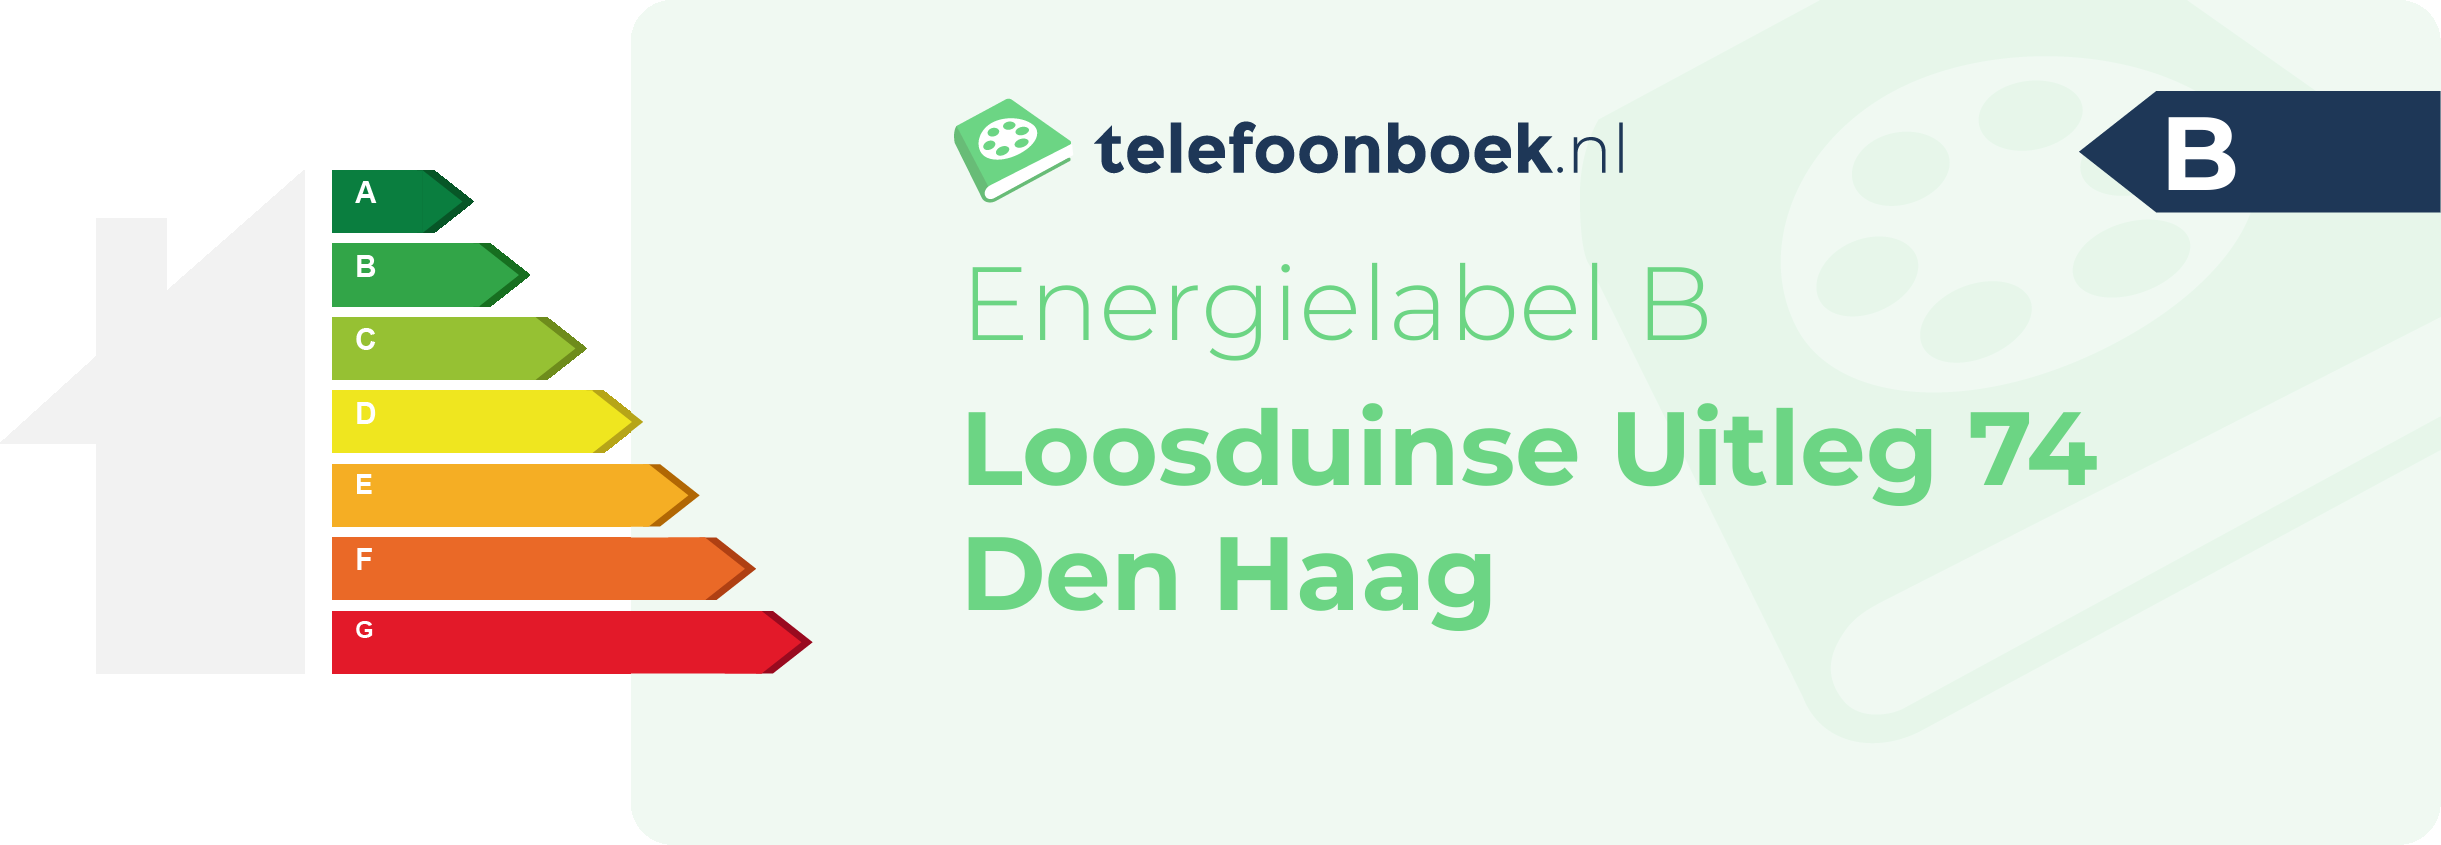 Energielabel Loosduinse Uitleg 74 Den Haag